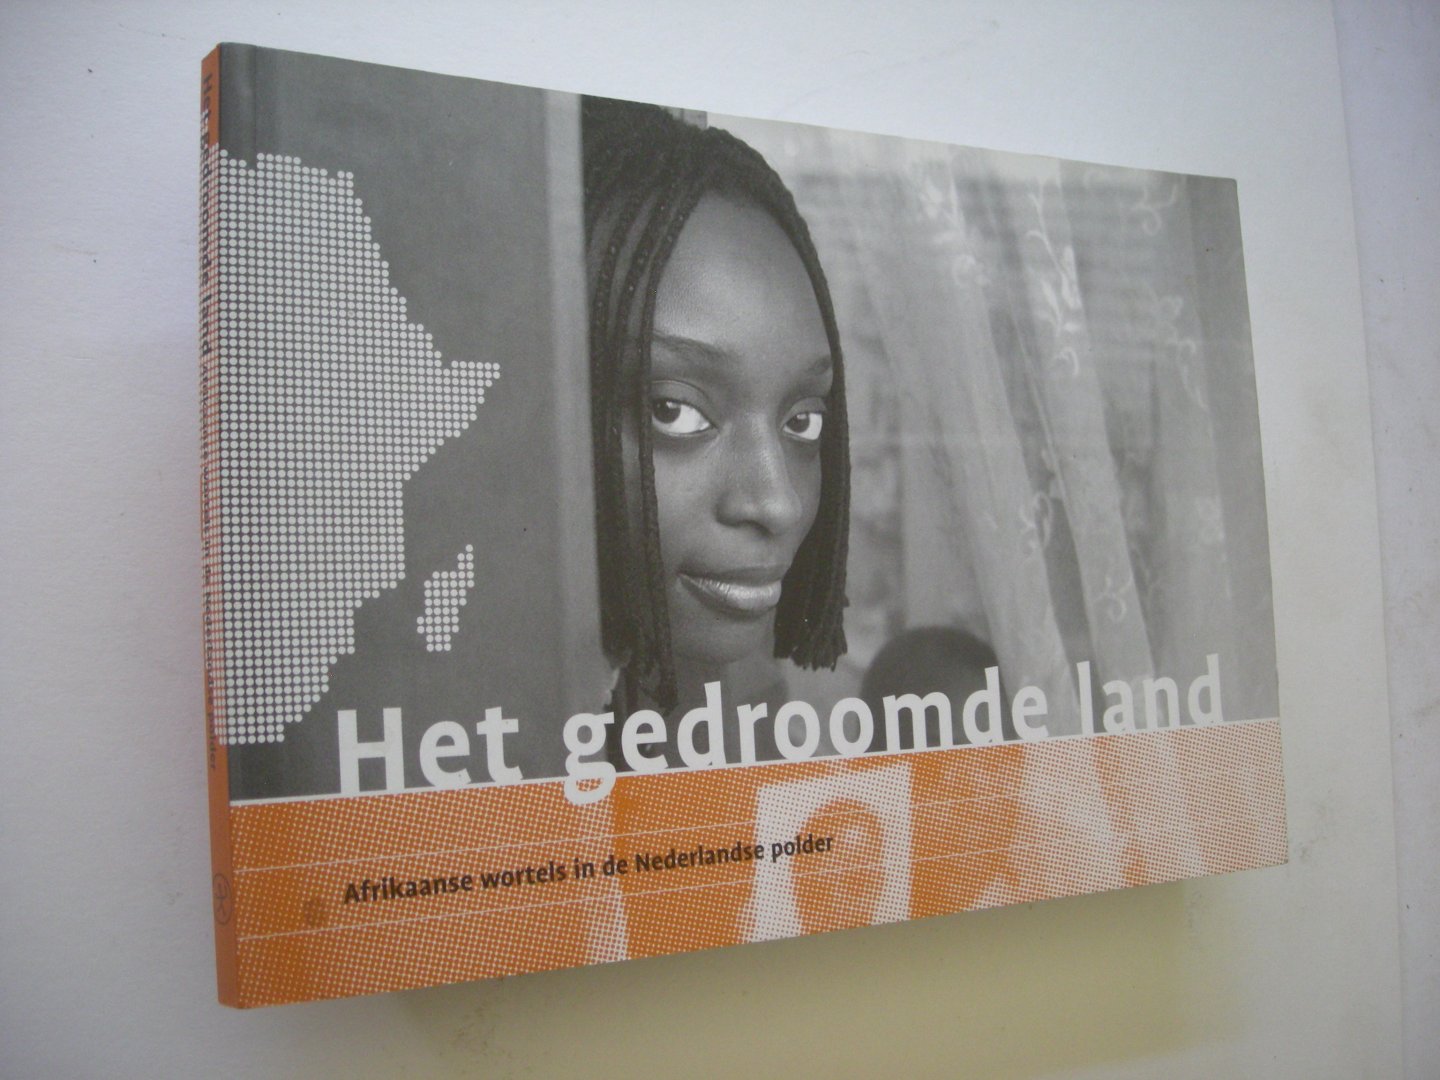 Schoor, L.van den, red. - Het gedroomde Land, Afrikaanse wortels in de Nederlandse polder